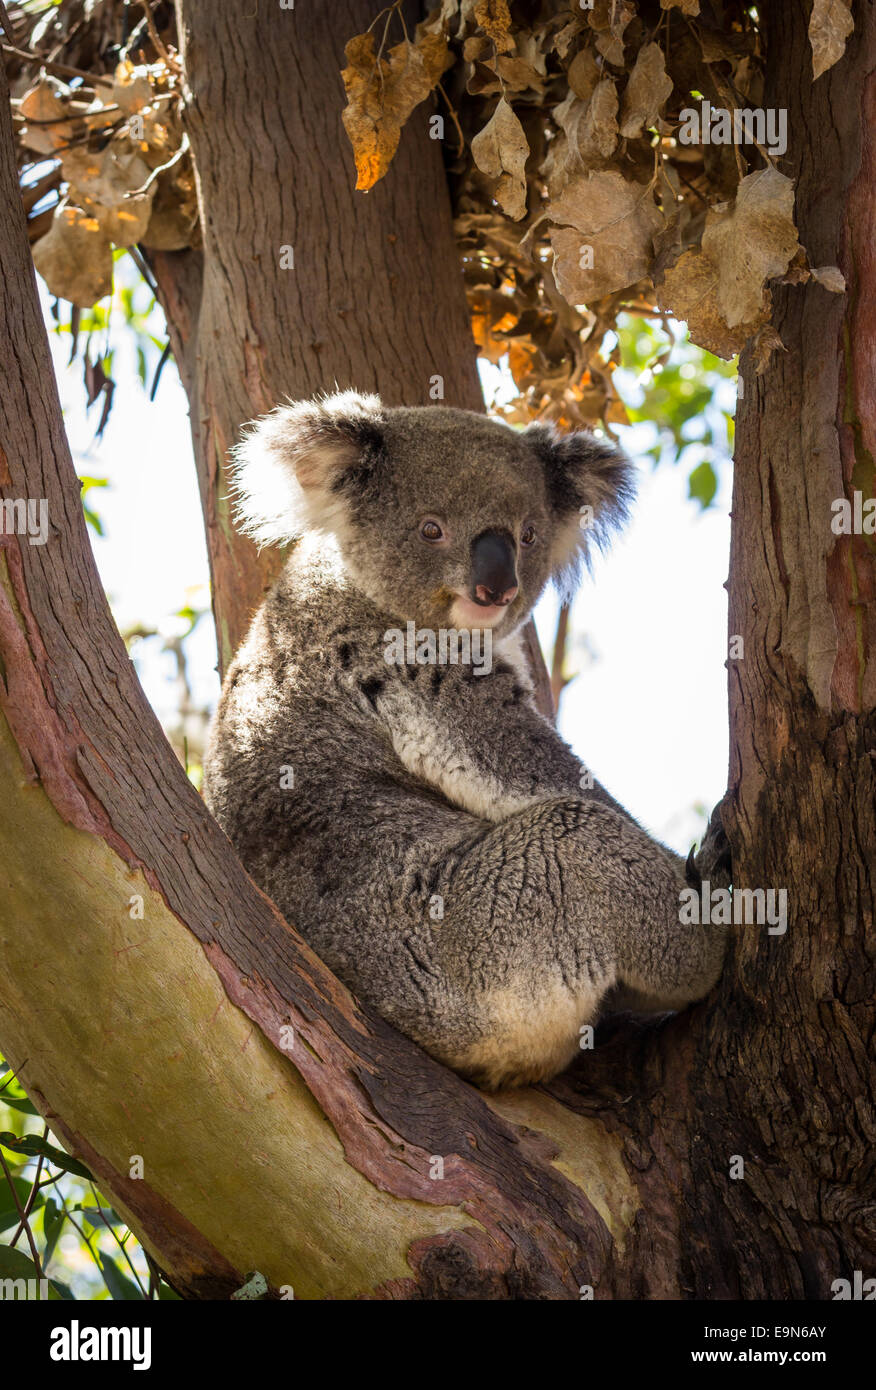 Close up of Koala bear in tree Stock Photo